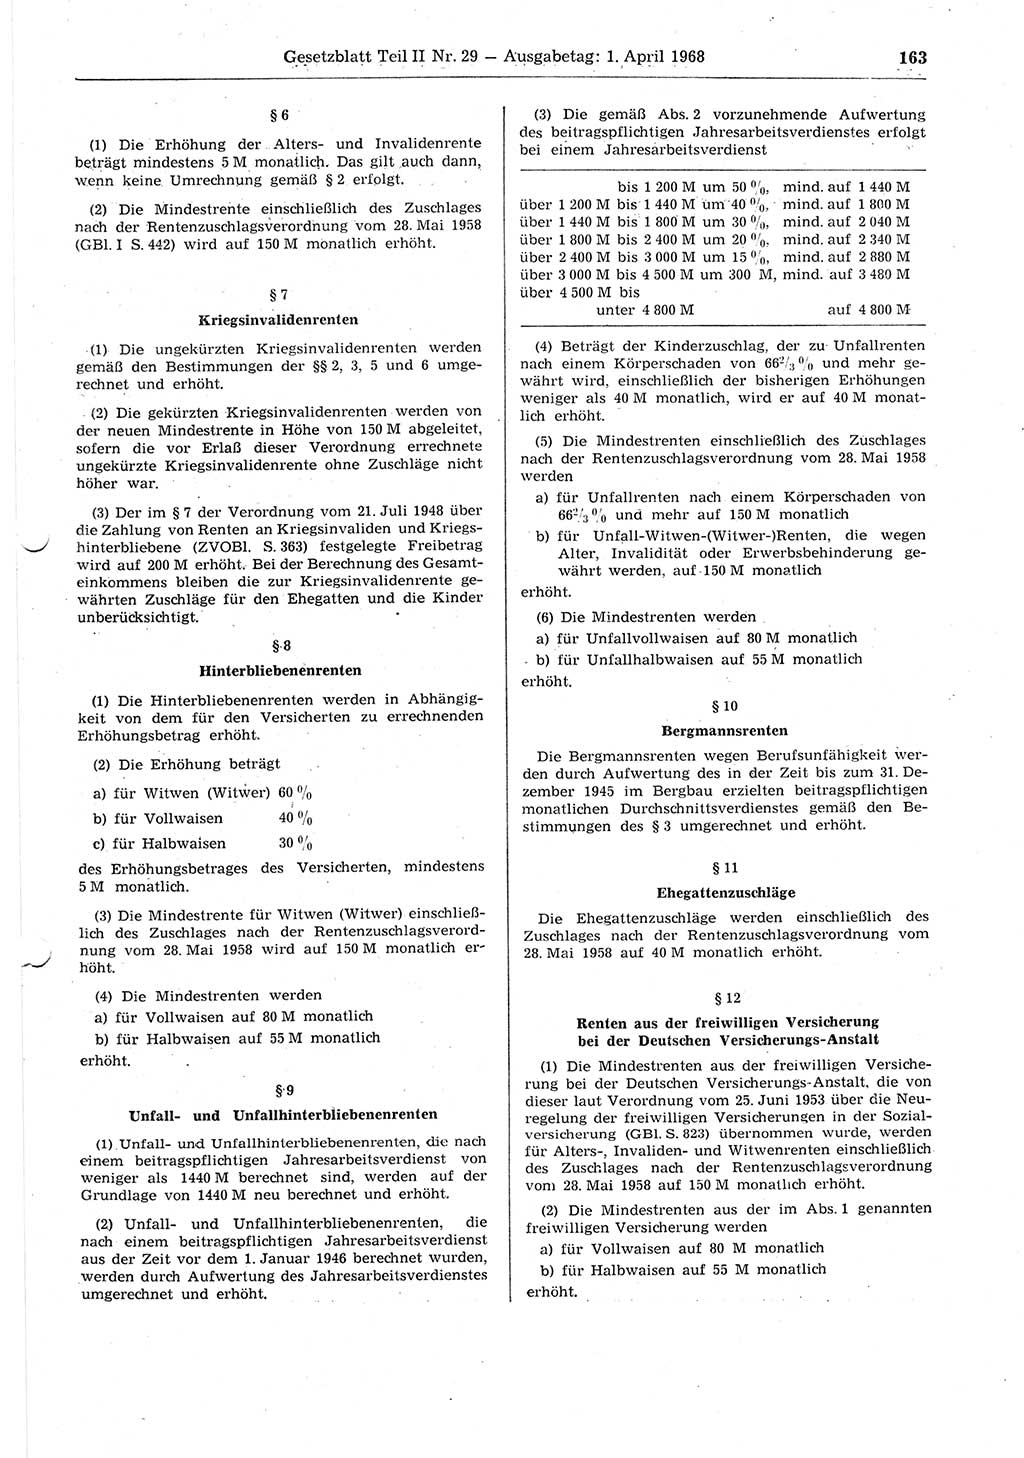 Gesetzblatt (GBl.) der Deutschen Demokratischen Republik (DDR) Teil ⅠⅠ 1968, Seite 163 (GBl. DDR ⅠⅠ 1968, S. 163)